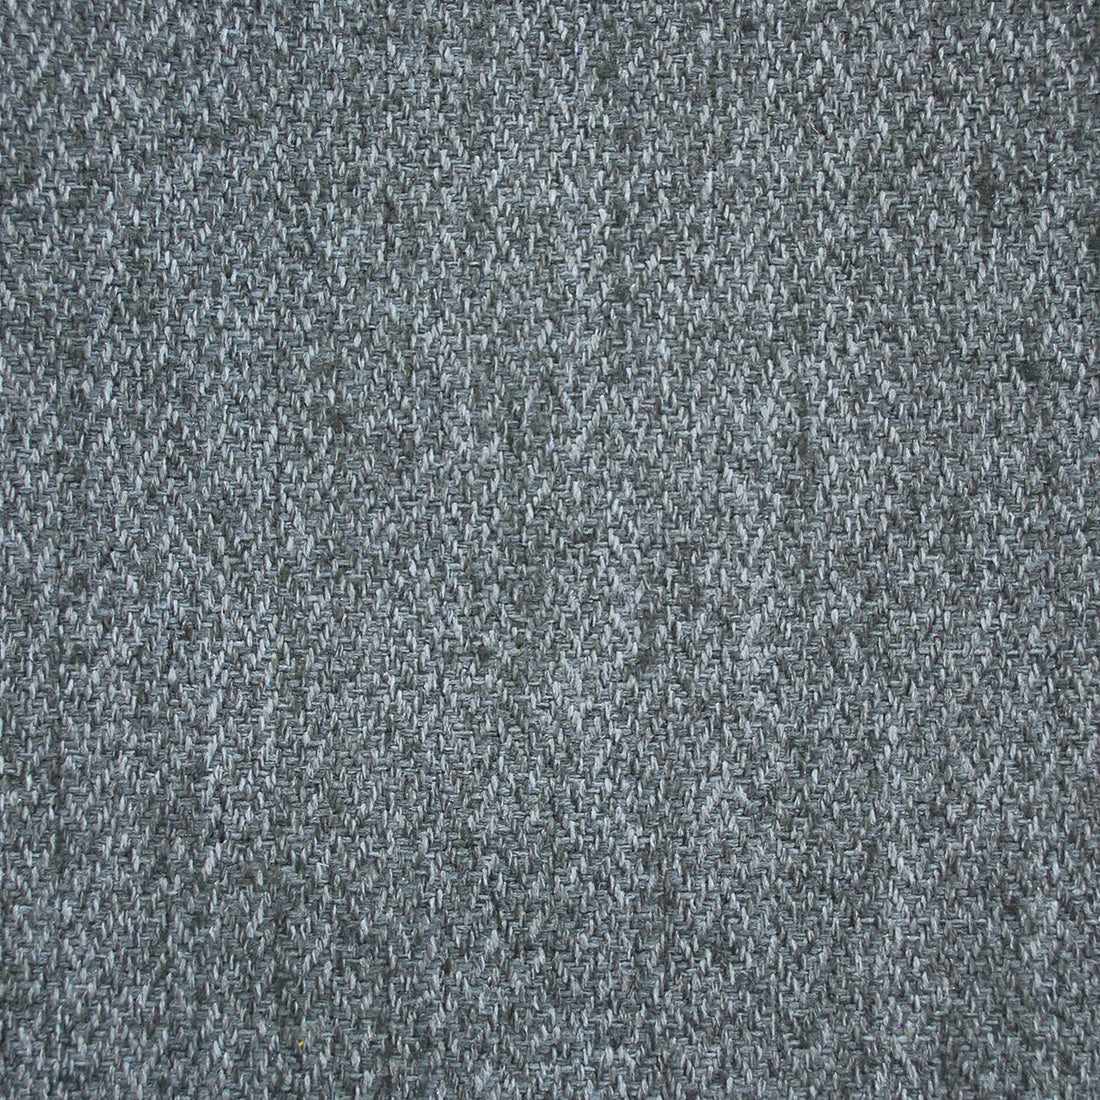 Kravet Design fabric in mississippi-4 color - pattern MISSISSIPPI.04.0 - by Kravet Design in the Lizzo collection